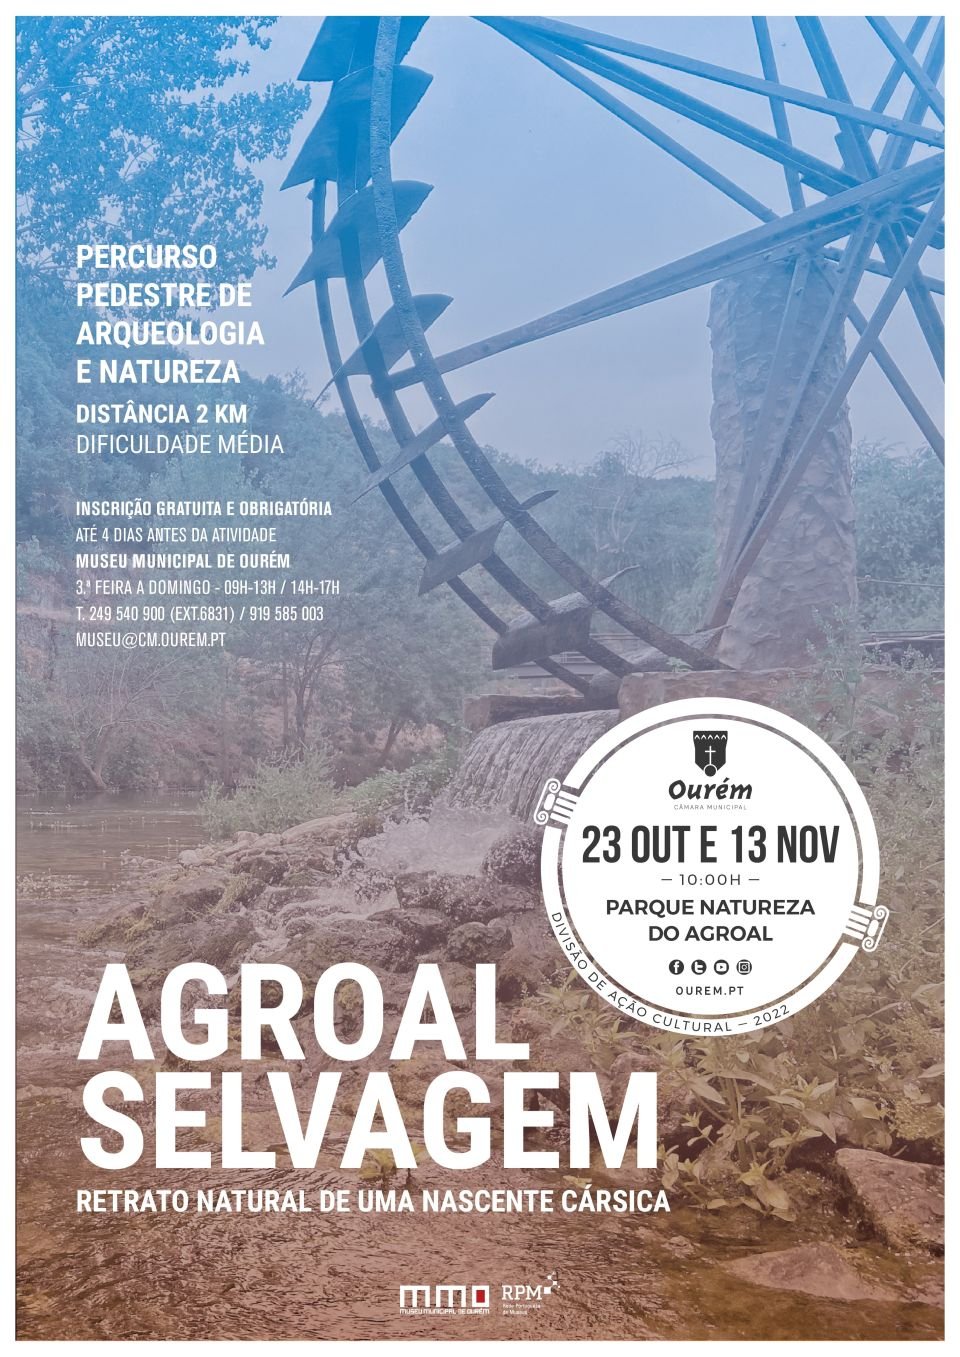 “AGROAL SELVAGEM: RETRATO NATURAL DE UMA NASCENTE CÁRSICA” - PERCURSO PEDESTRE DE ARQUEOLOGIA E NATUREZA